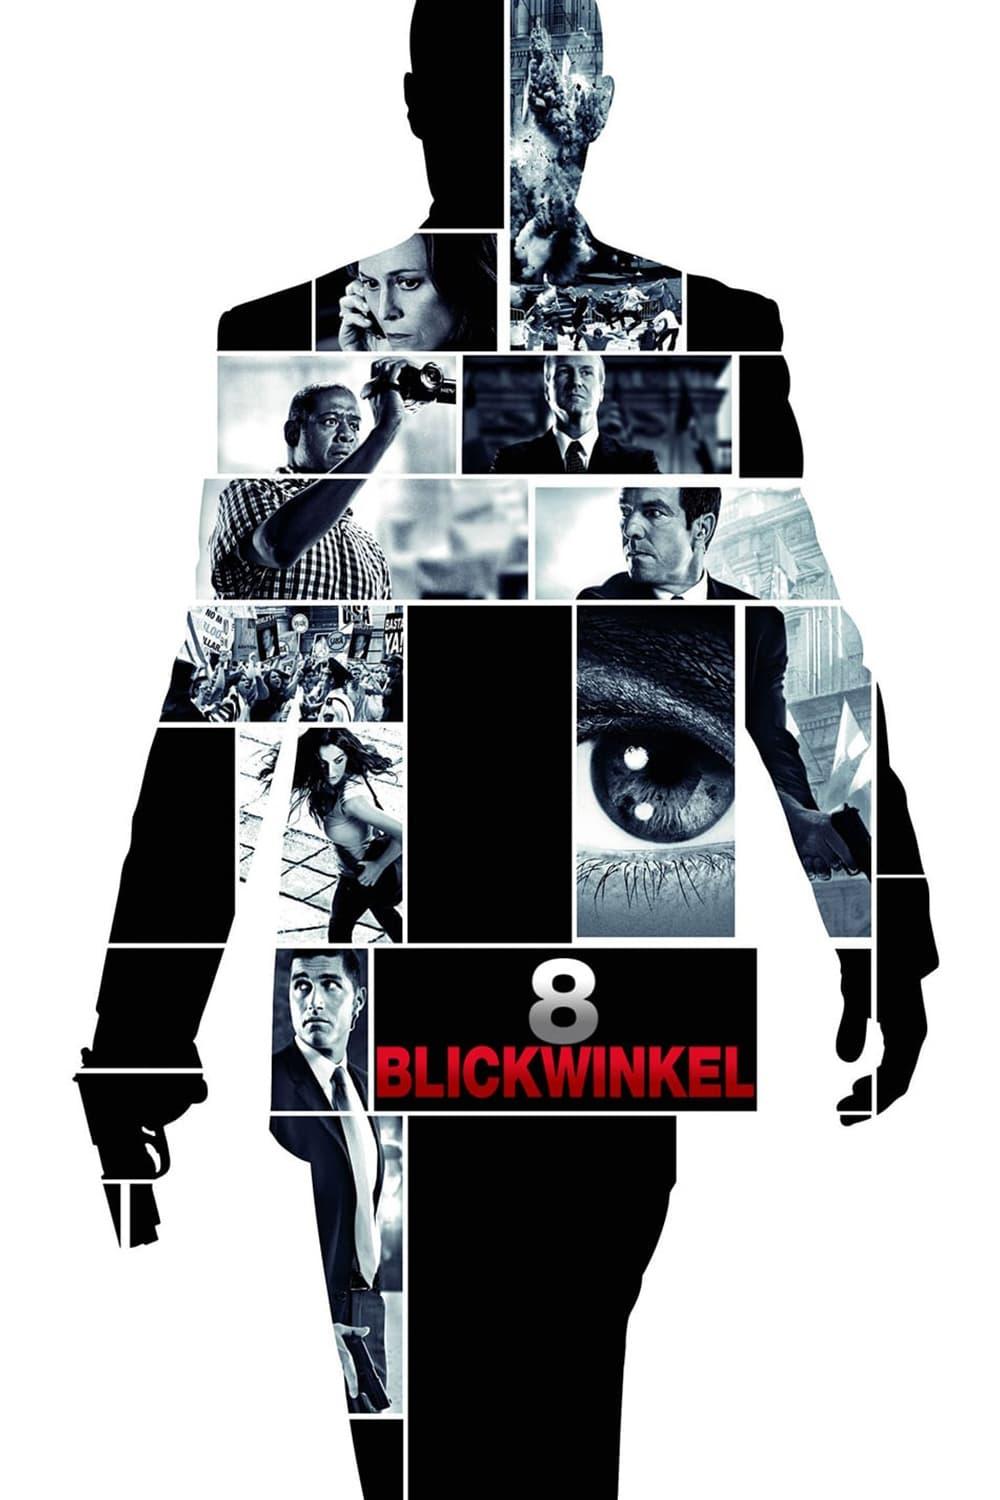 8 Blickwinkel poster